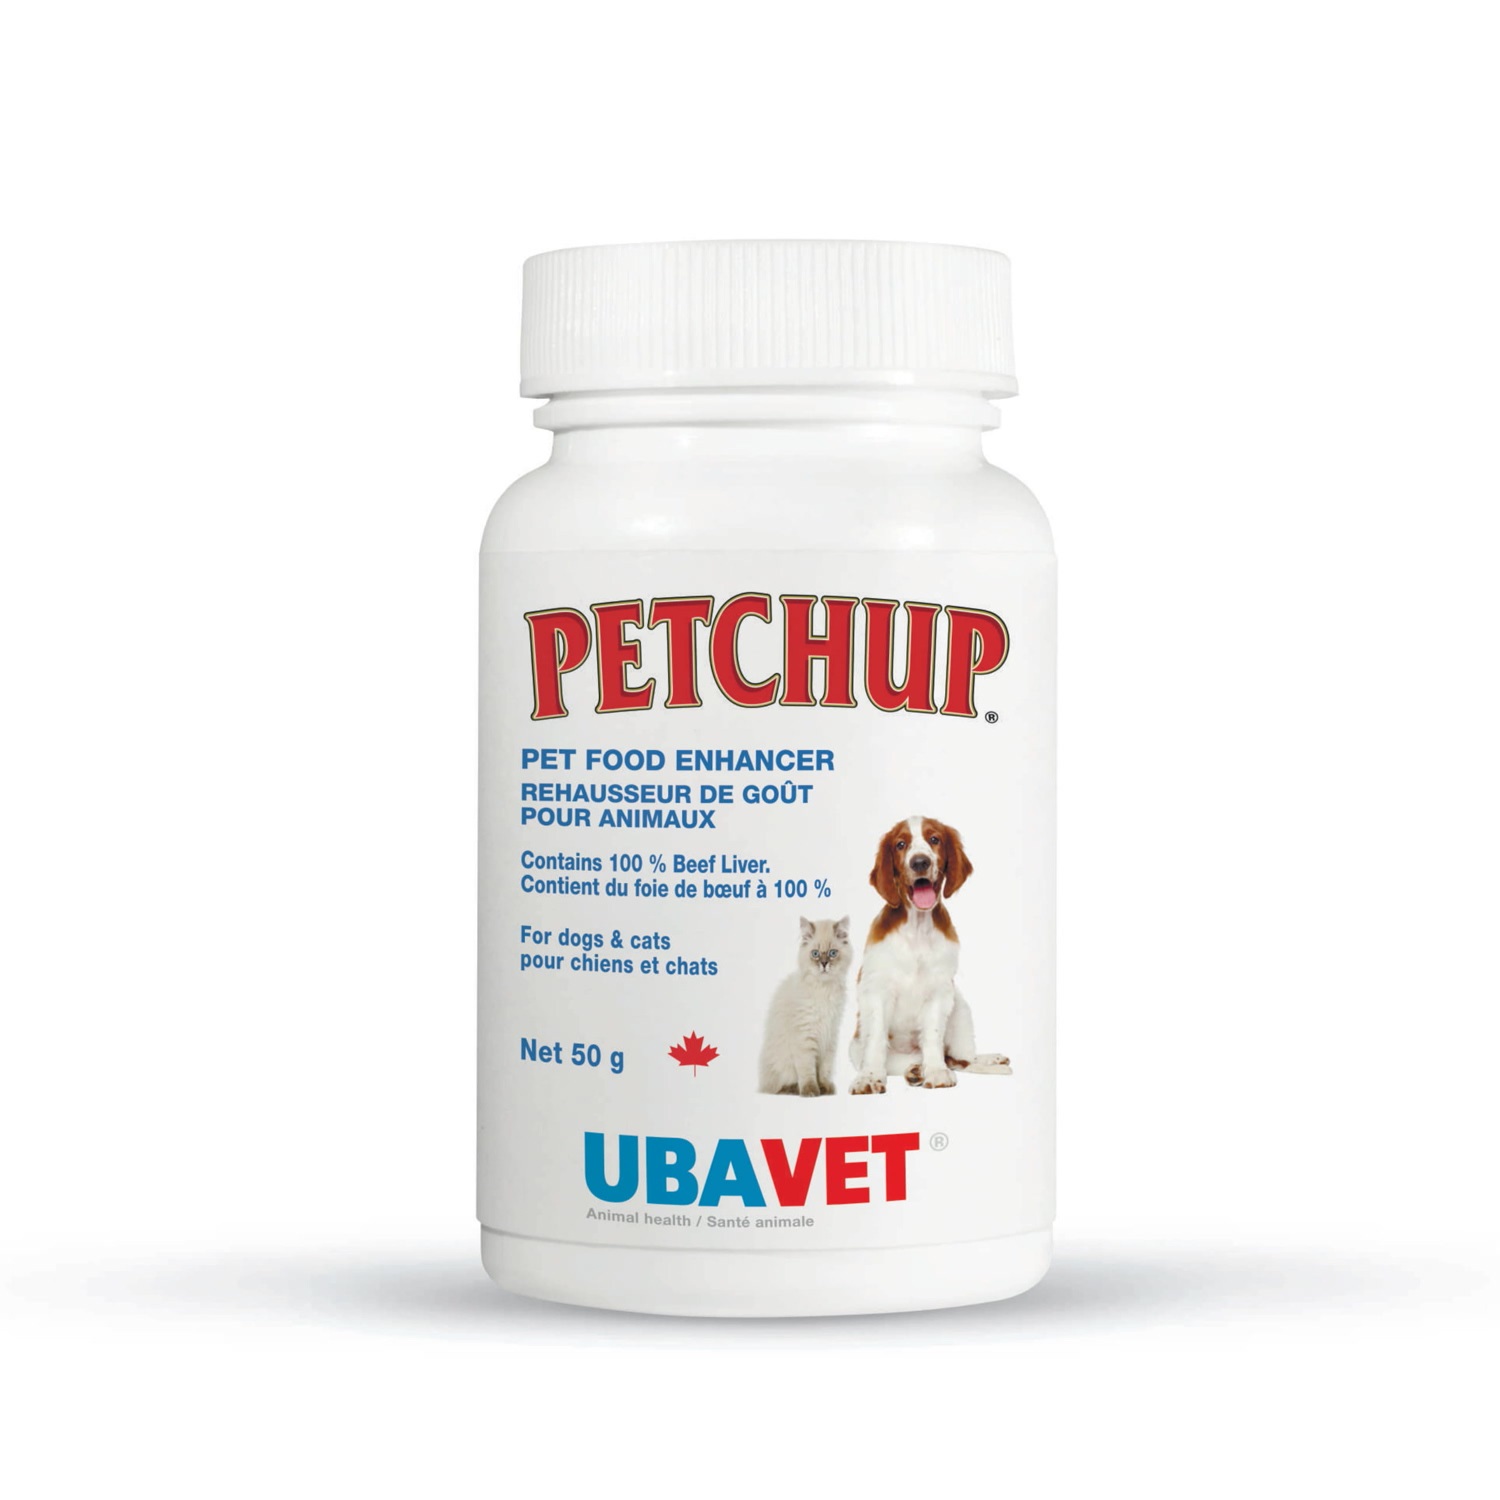 Ubavet Petchup Pet Food Enhancer